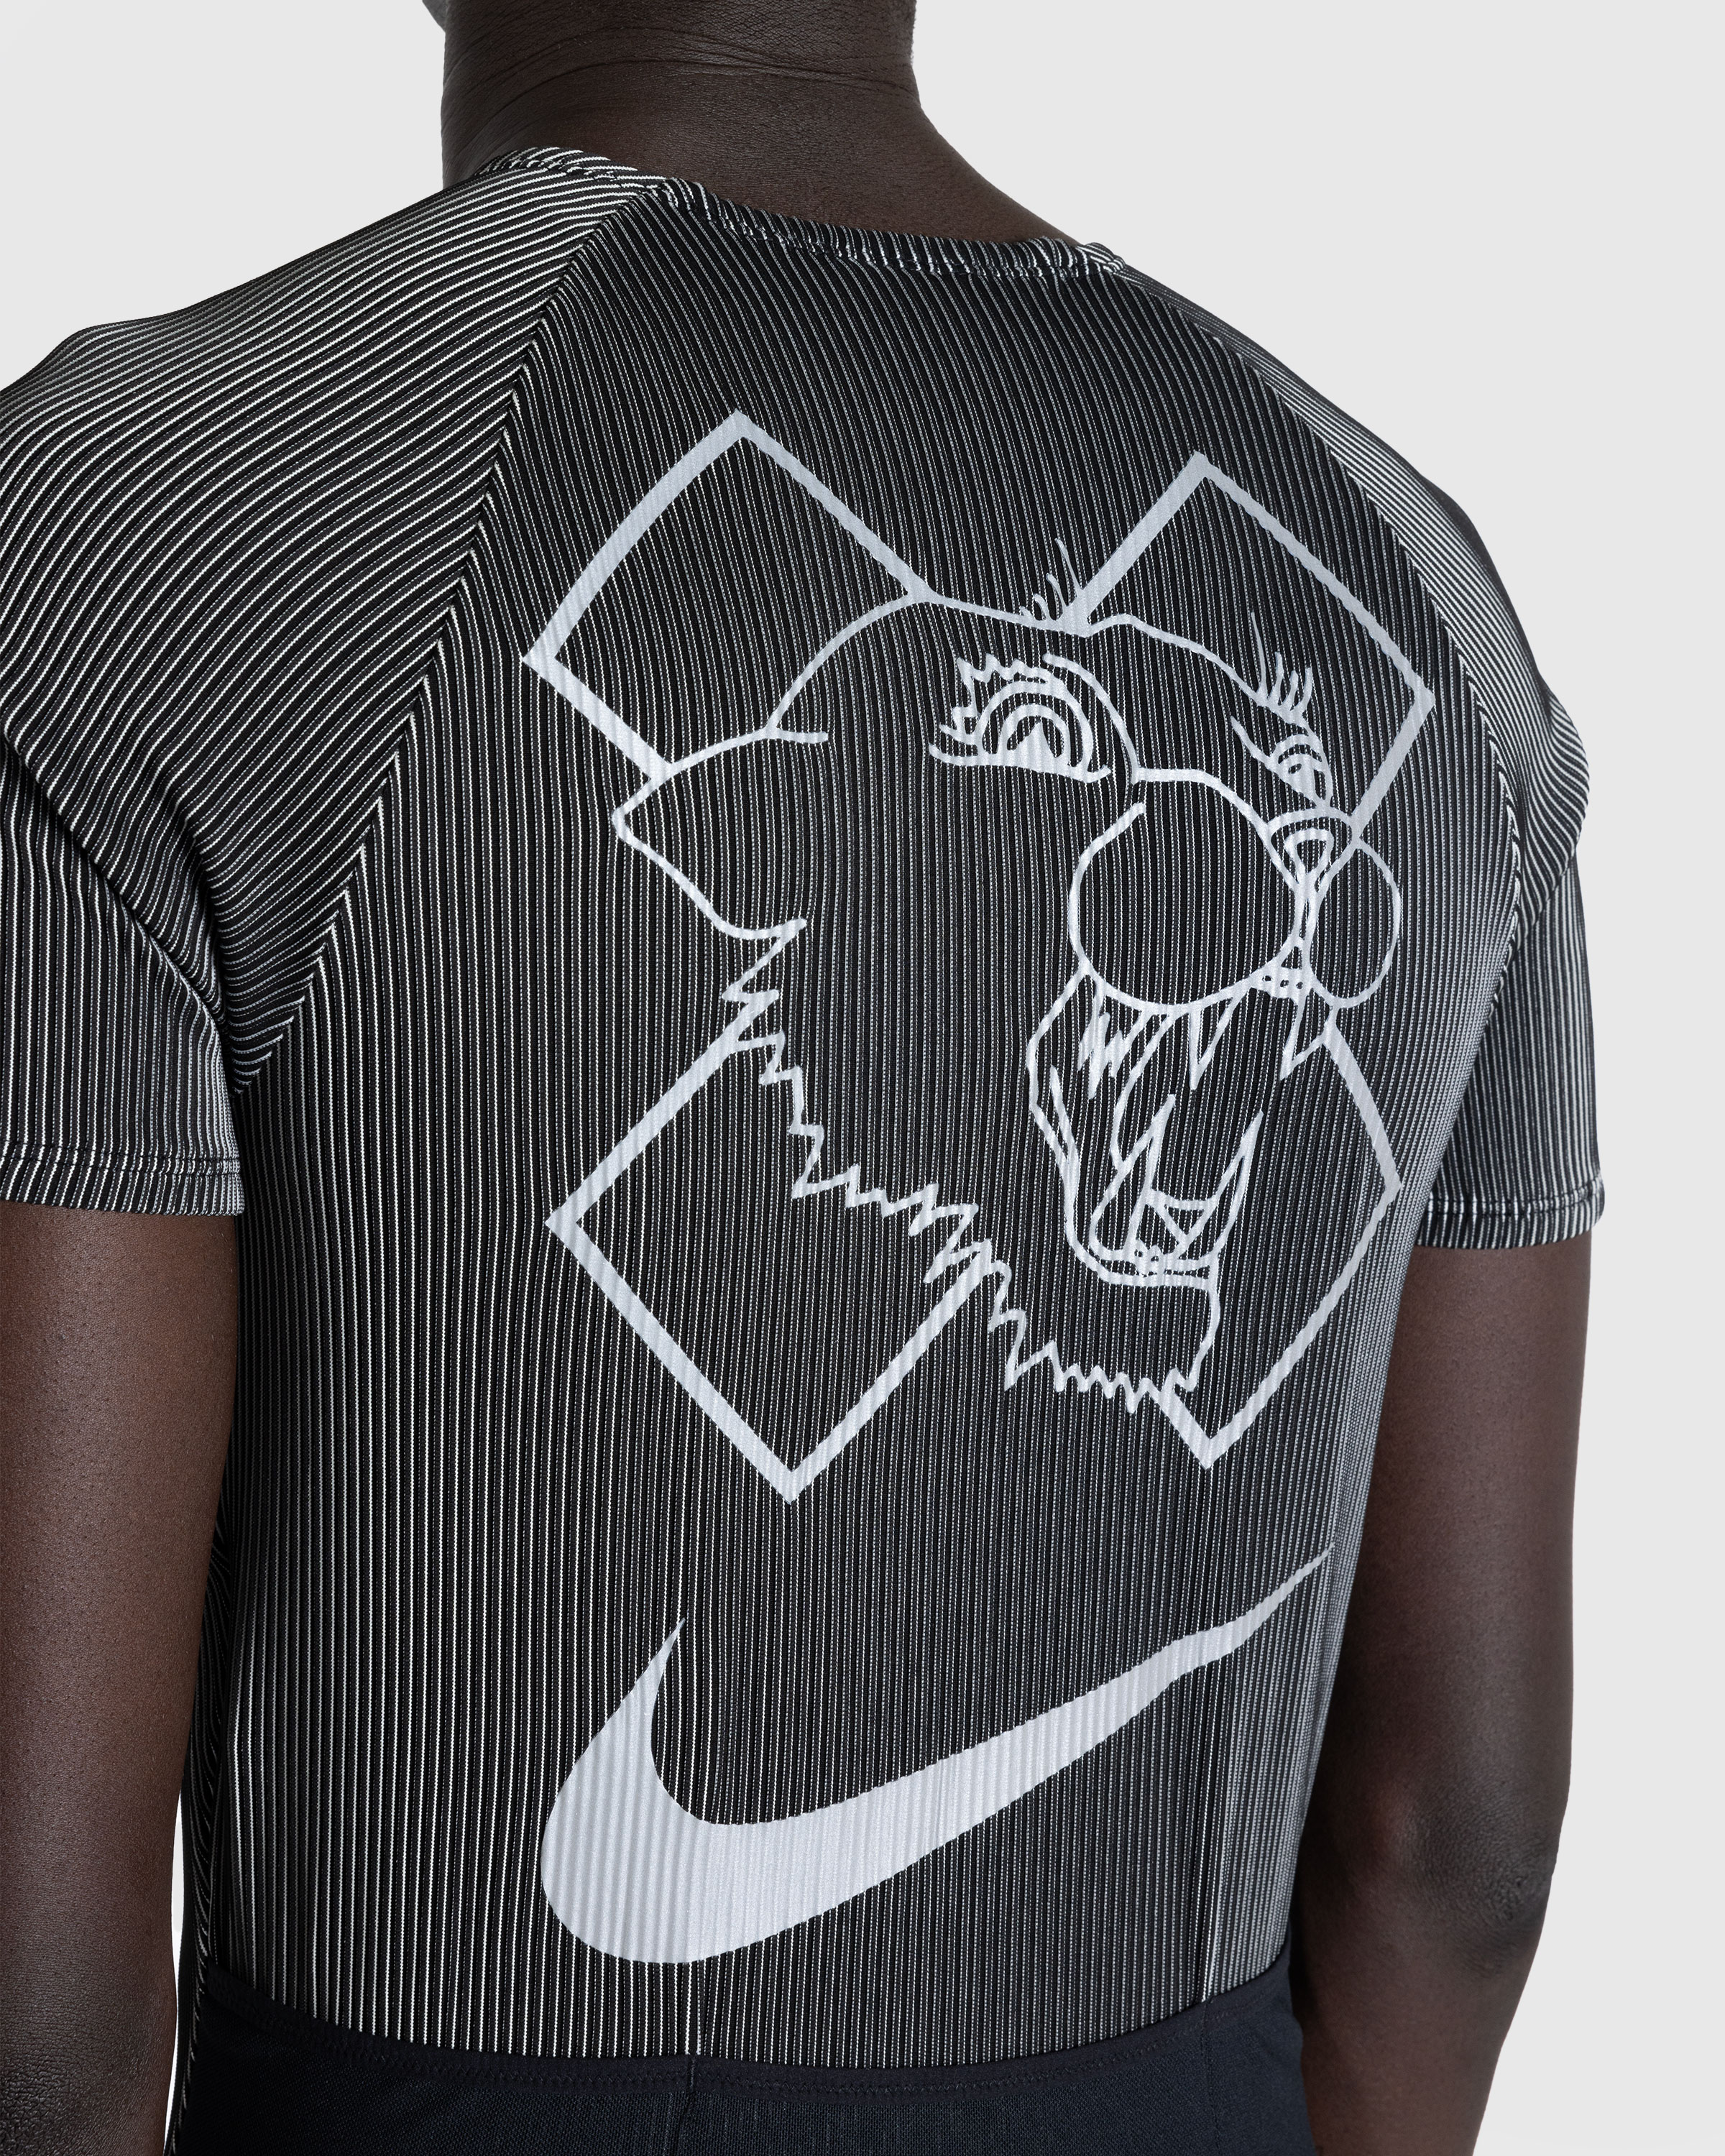 Nike x Patta – U NRG Nike x Patta Race Suit Black - Overshirt - Black - Image 6